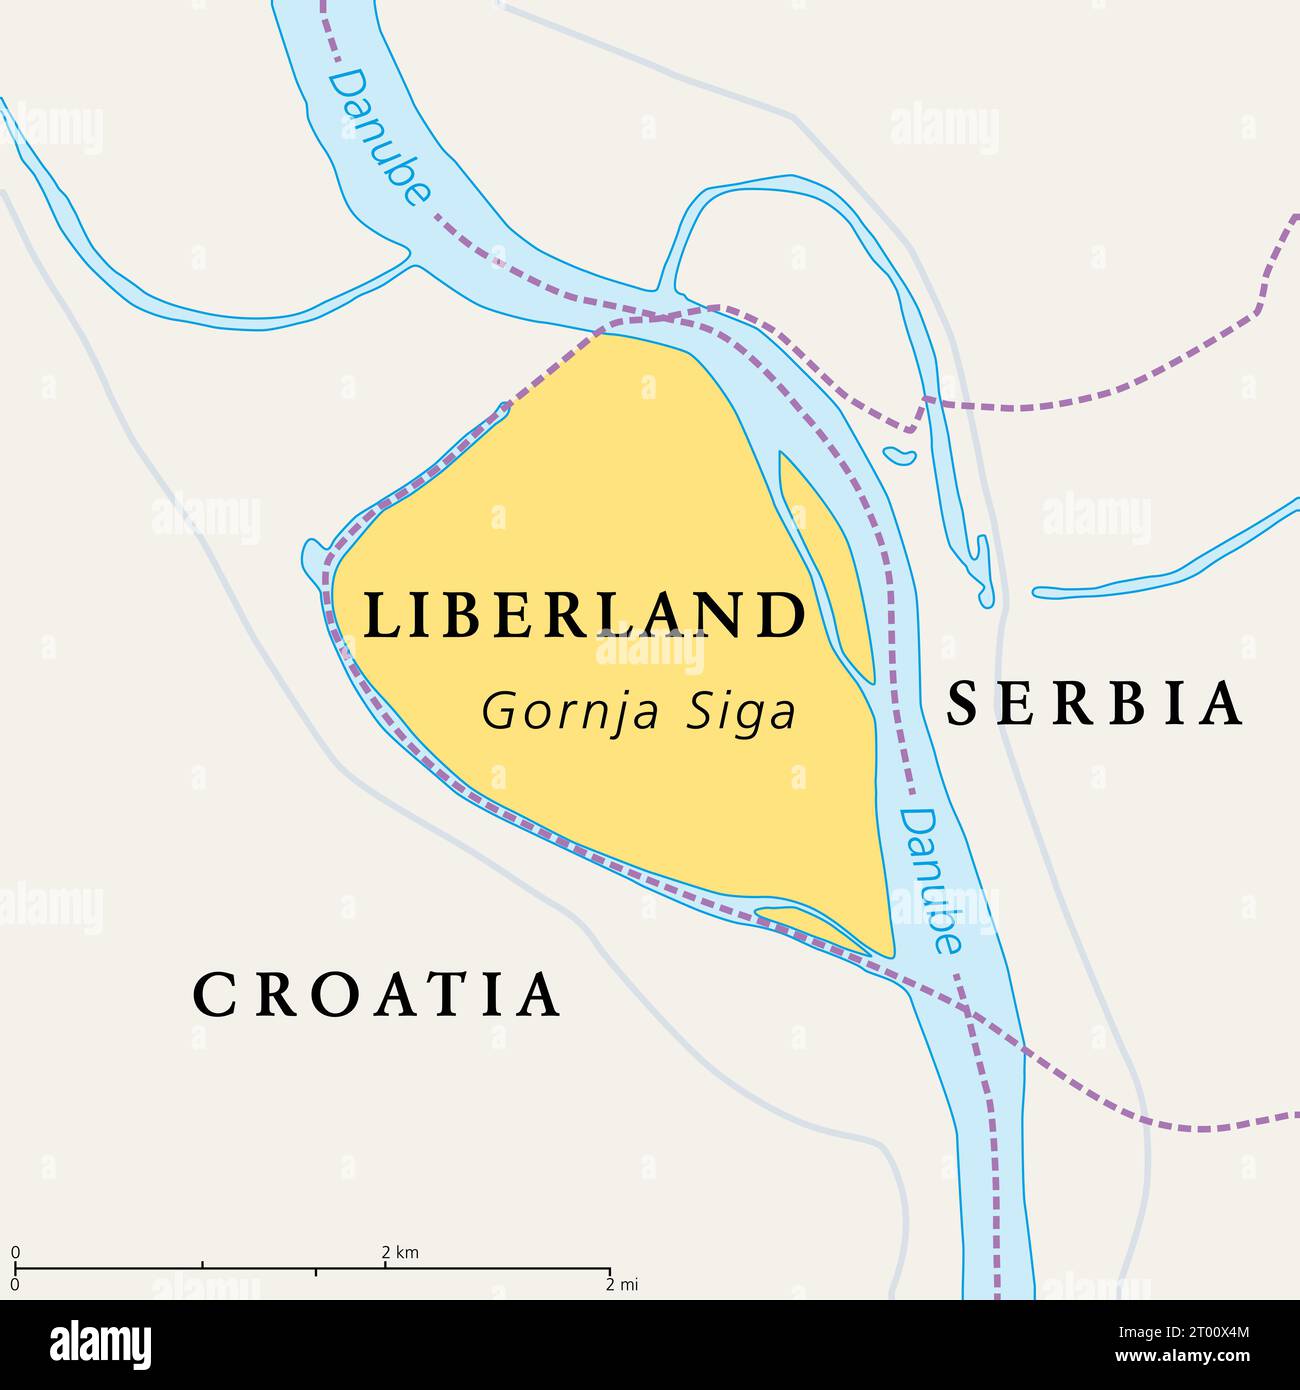 Freie Republik Liberland, politische Karte. Unerkannte Mikronation in Europa, die unbewohnte Parzelle umstrittenen Landes zwischen Kroatien und Serbien beansprucht. Stockfoto